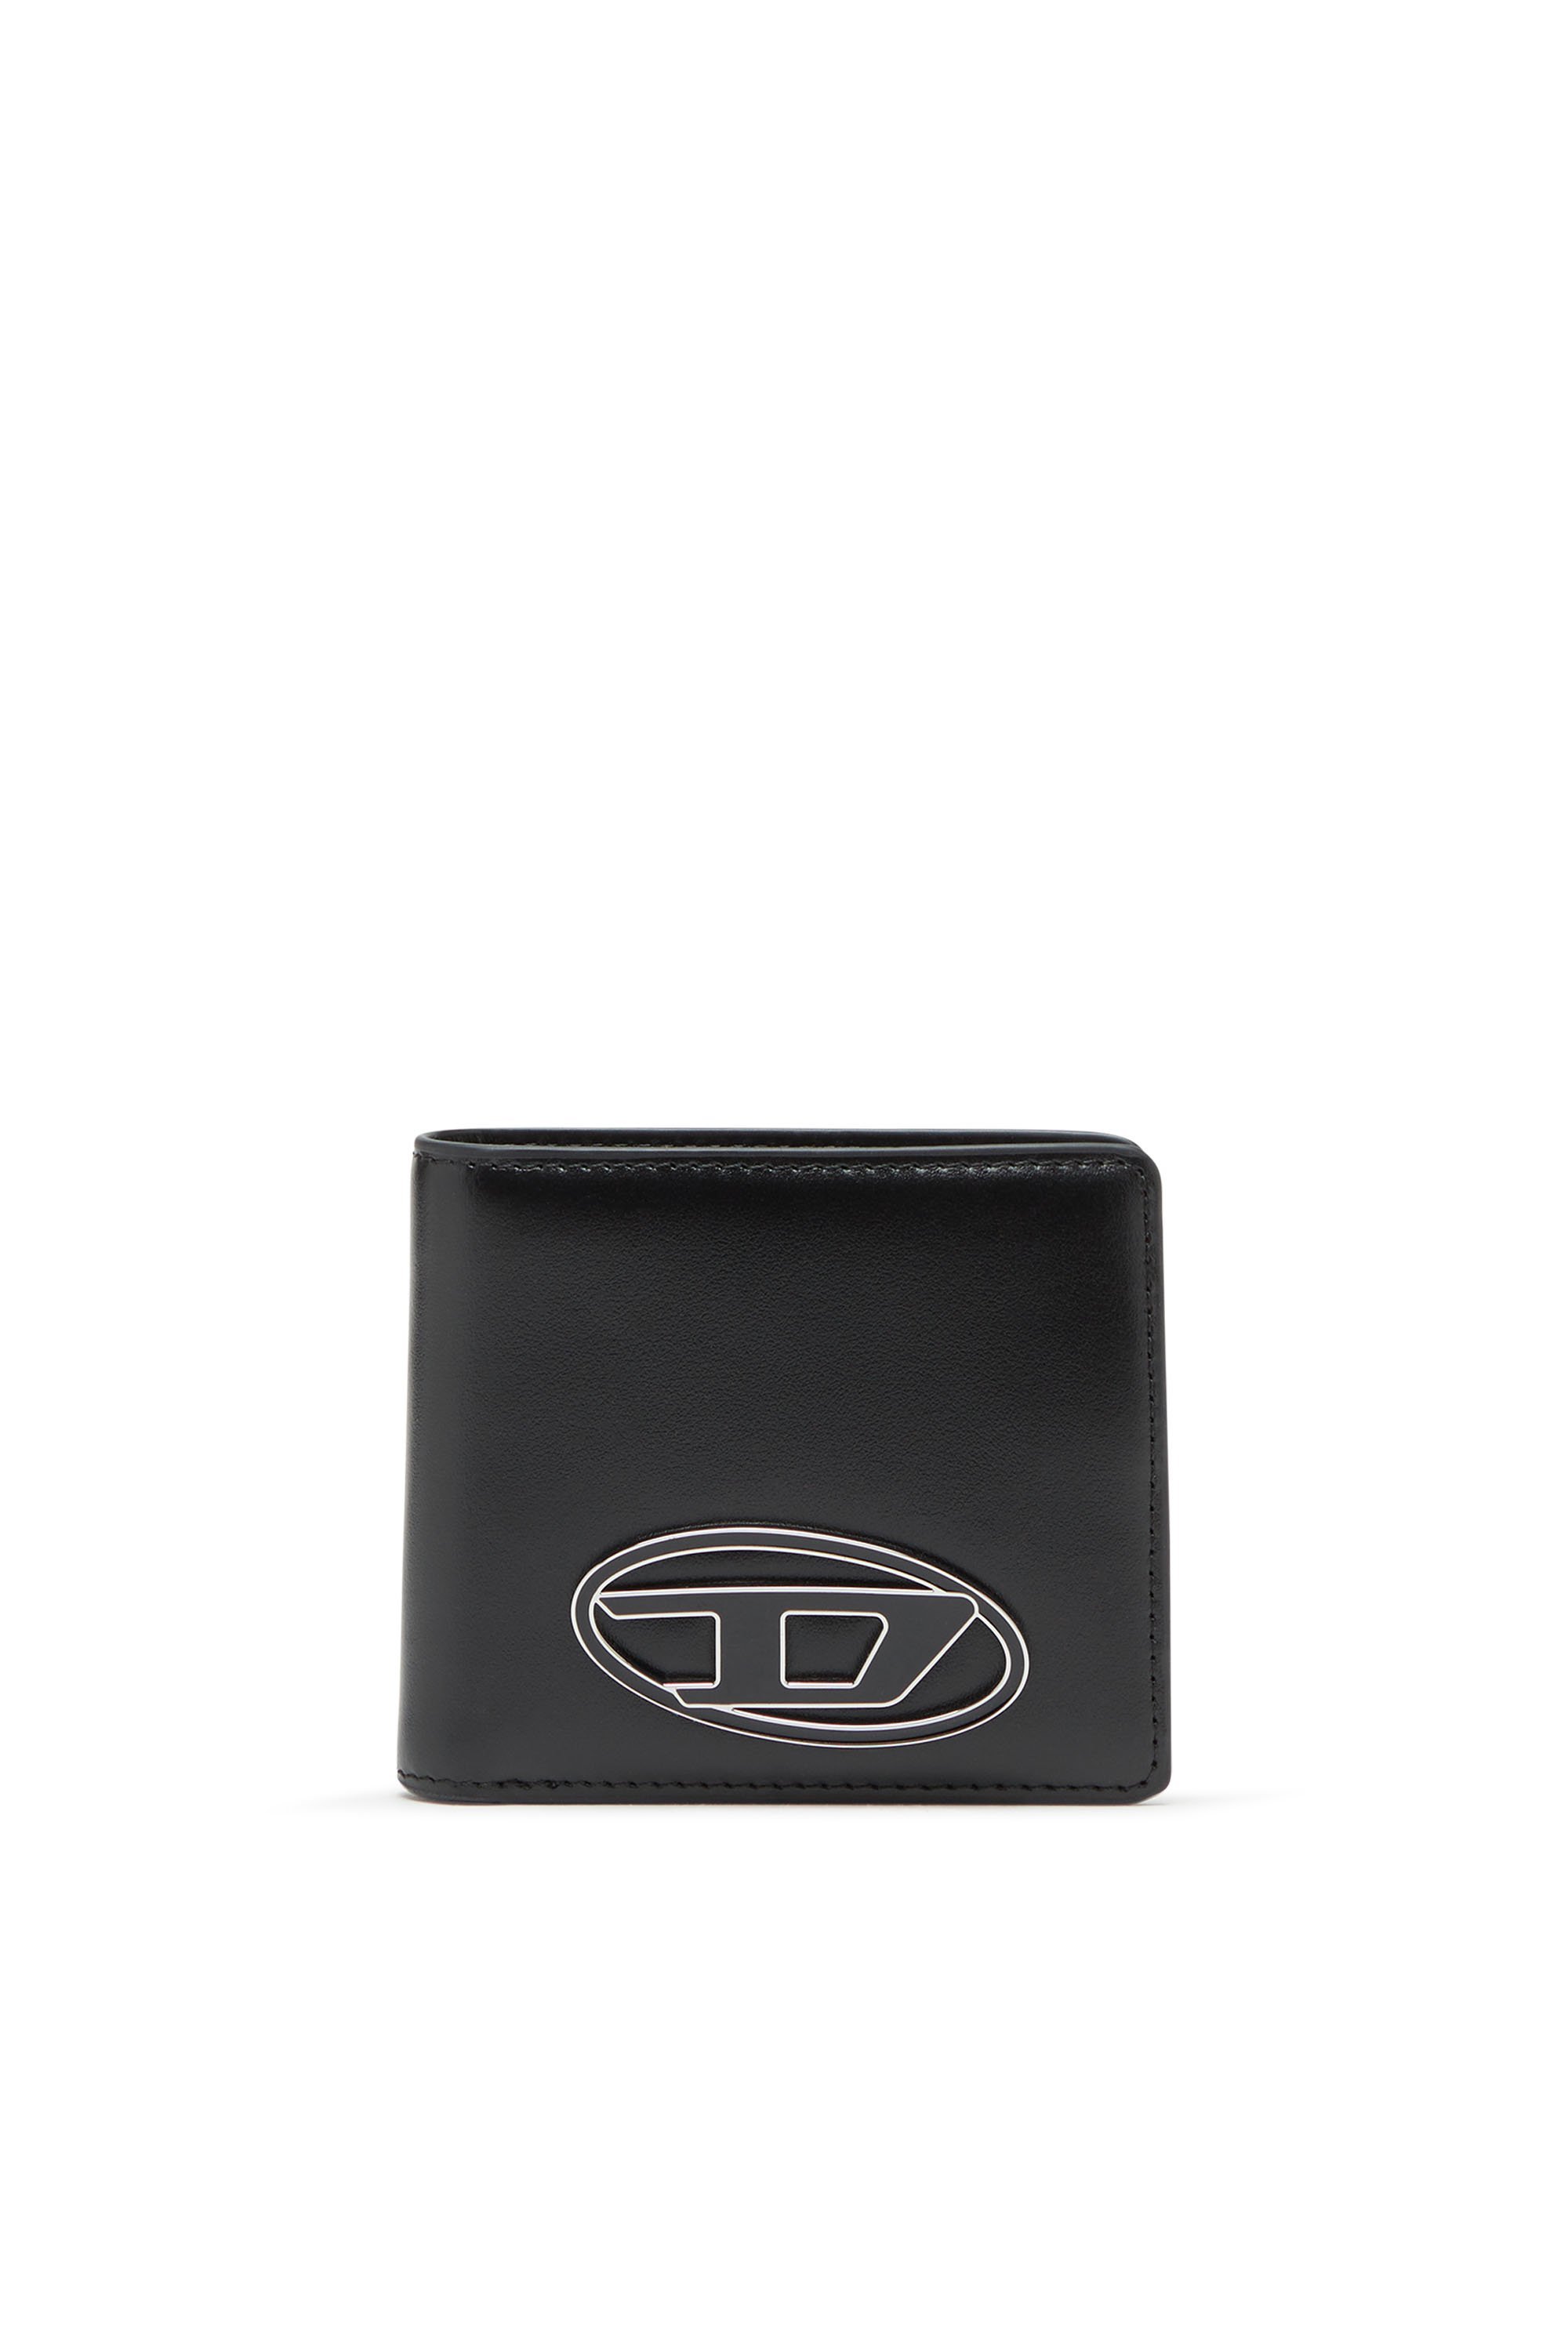 ディーゼル 二つ折り財布（メンズ） DIESEL メンズ 二つ折りウォレット 1DR BI FOLD COIN S 3D ディーゼル 財布・ポーチ・ケース 財布 ブラック【送料無料】